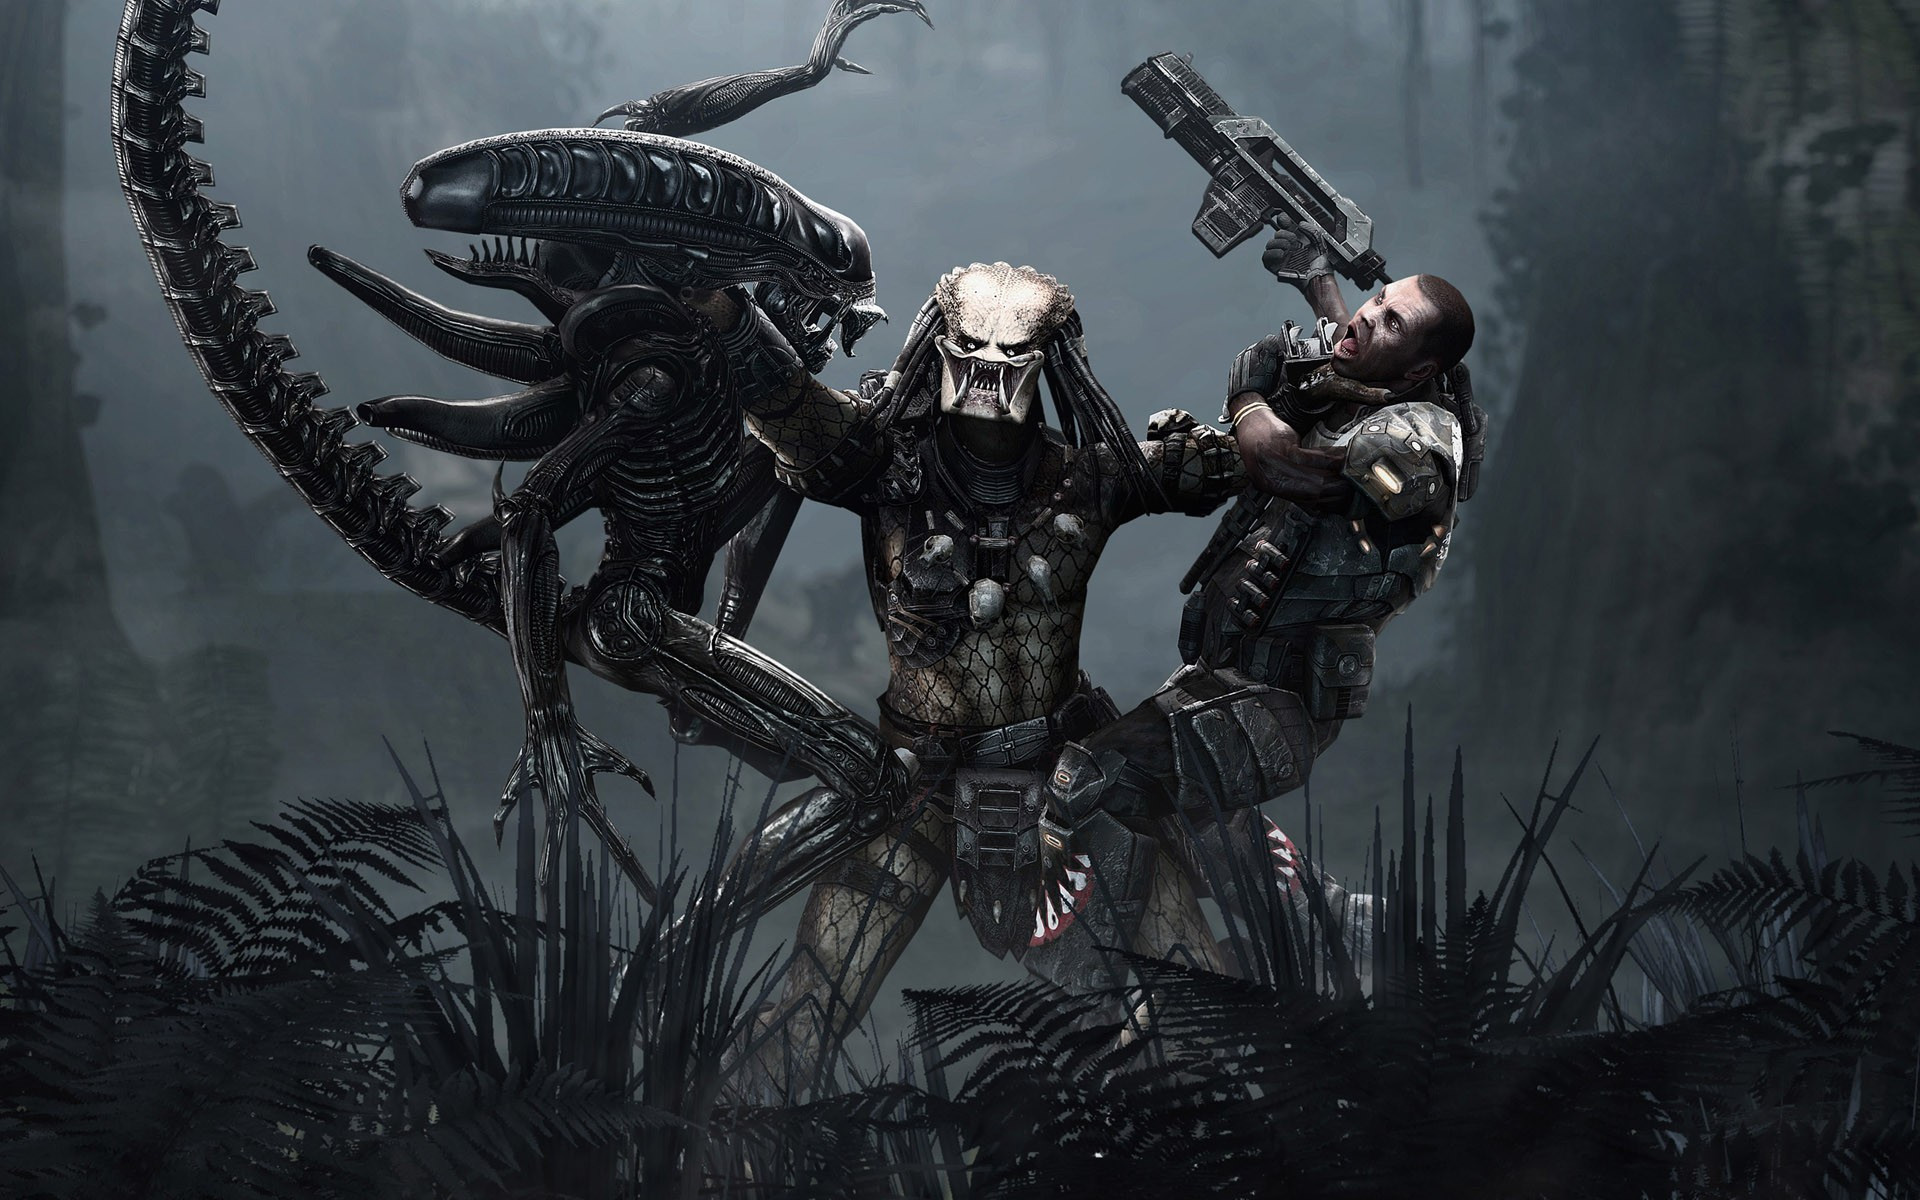 alien vs predator game ps4